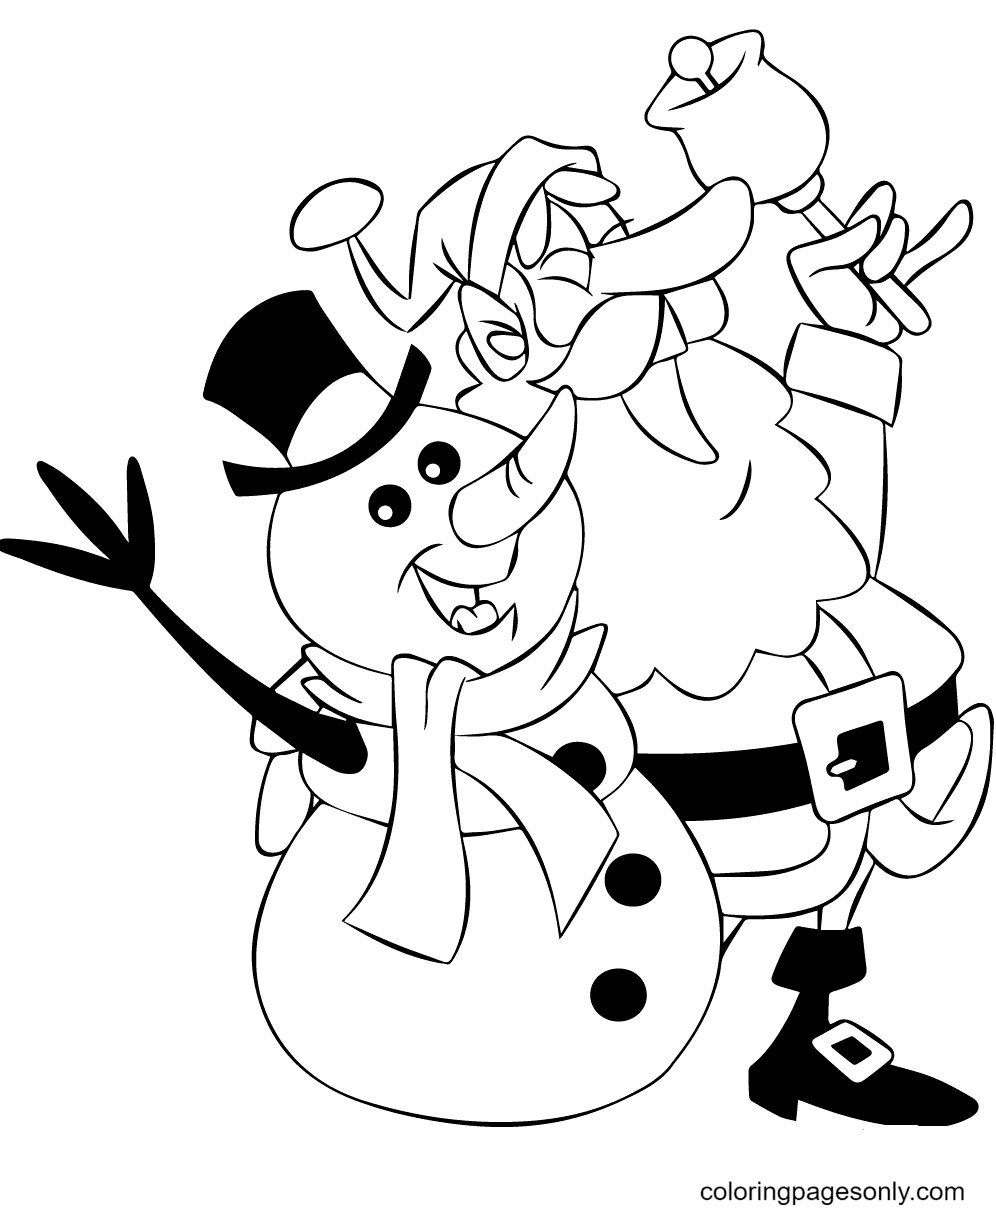 Santa and Snowman Singing Coloring Page